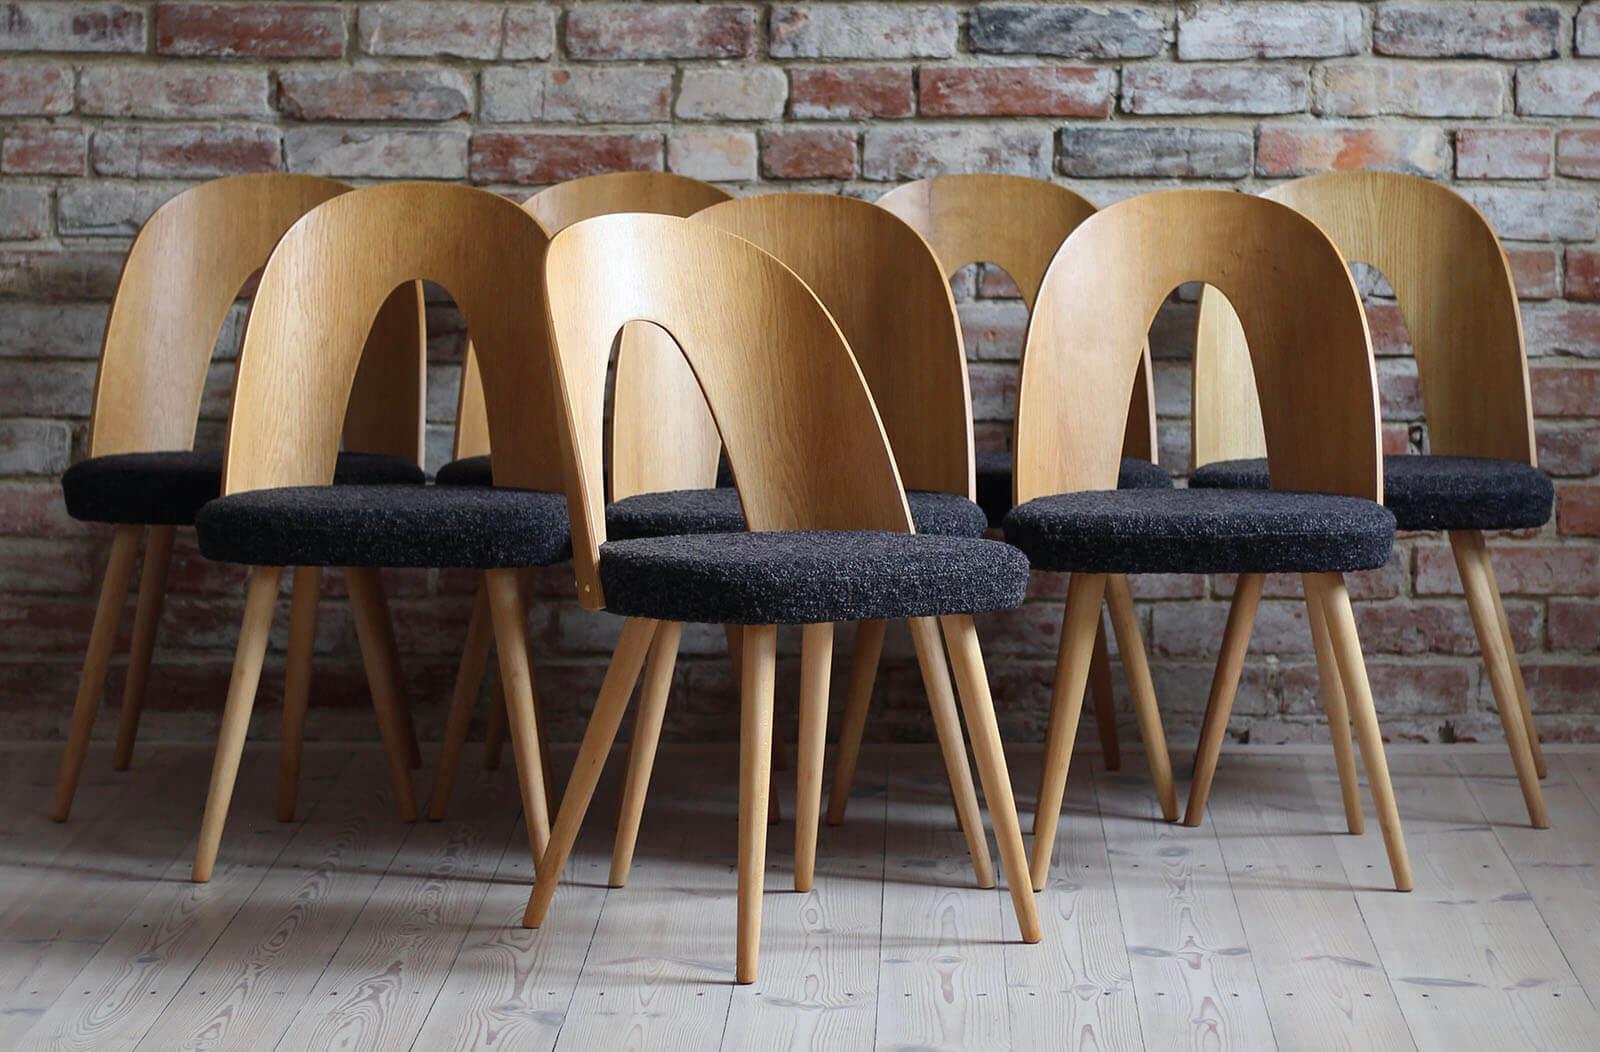 Cet ensemble de 8 chaises de salle à manger vintage a été conçu par le designer tchèque Antonin Šuman dans les années 1960. Les chaises ont été entièrement restaurées et finies avec une huile de haute qualité qui leur a donné une belle finition